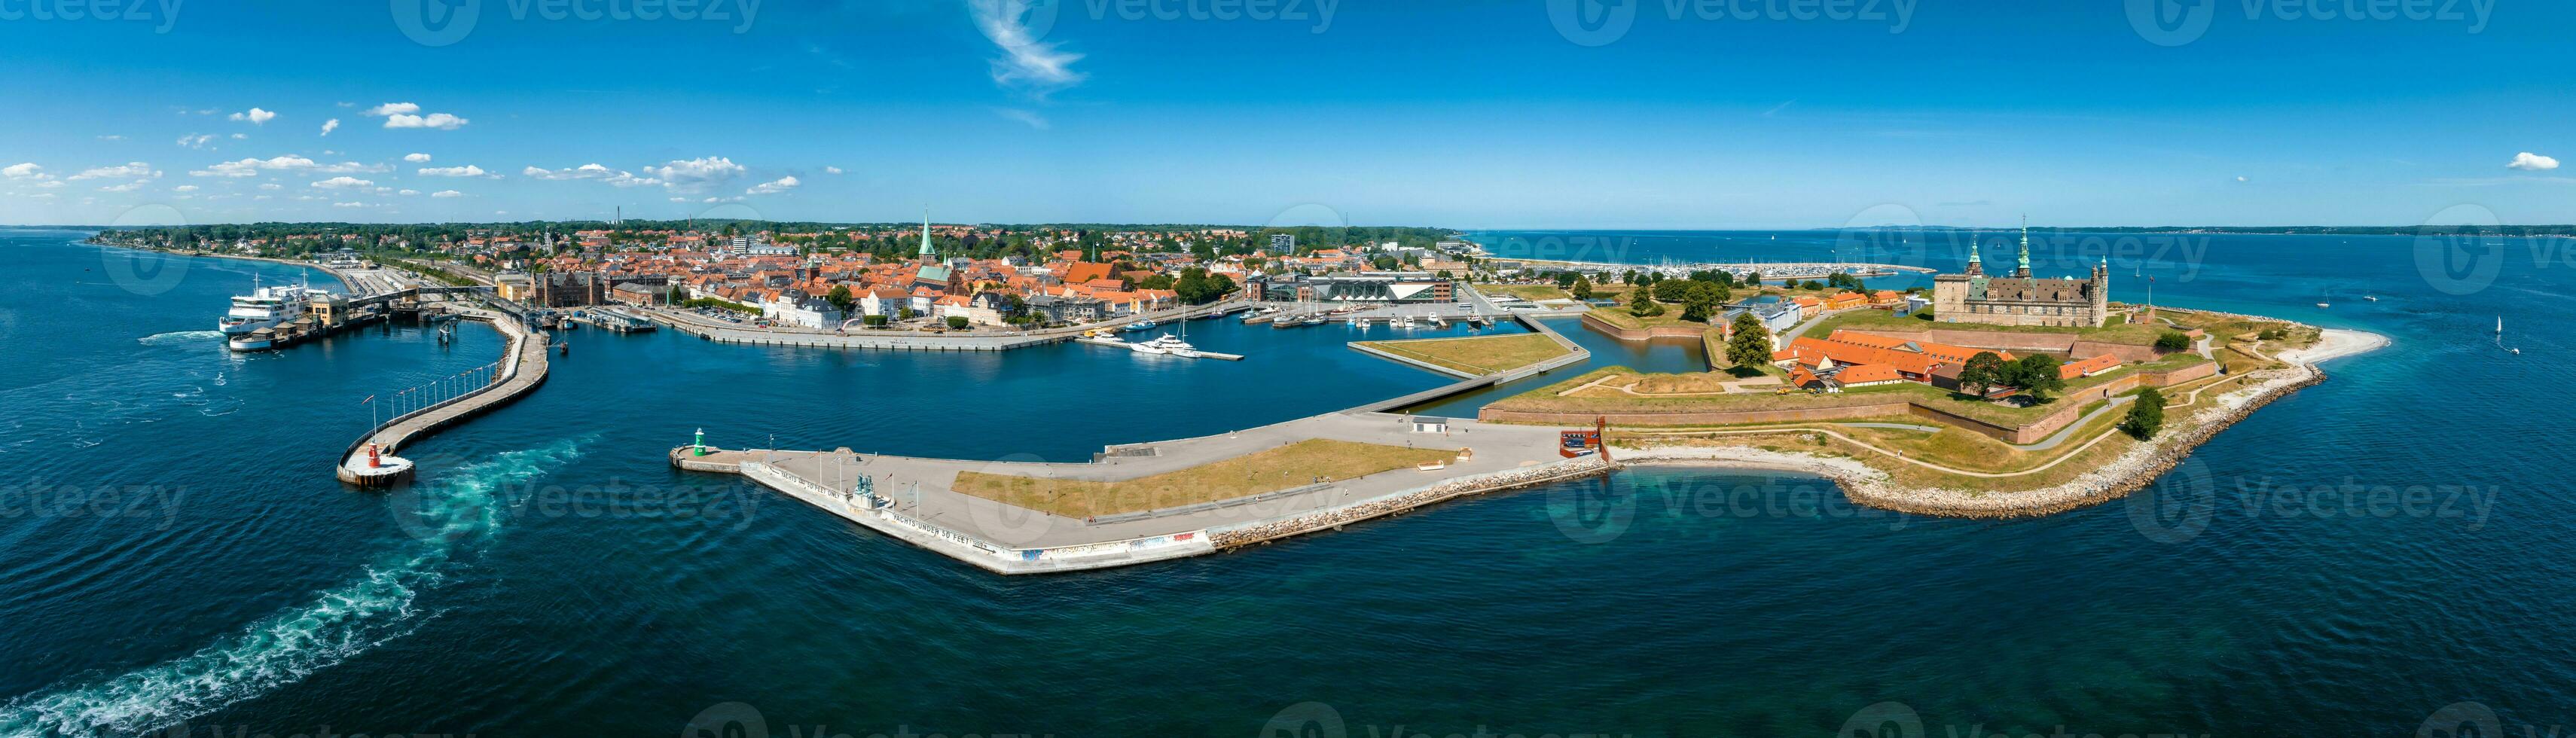 aereo Visualizza di Kronborg castello con bastioni, rivellino guardia il Ingresso per il baltico mare foto